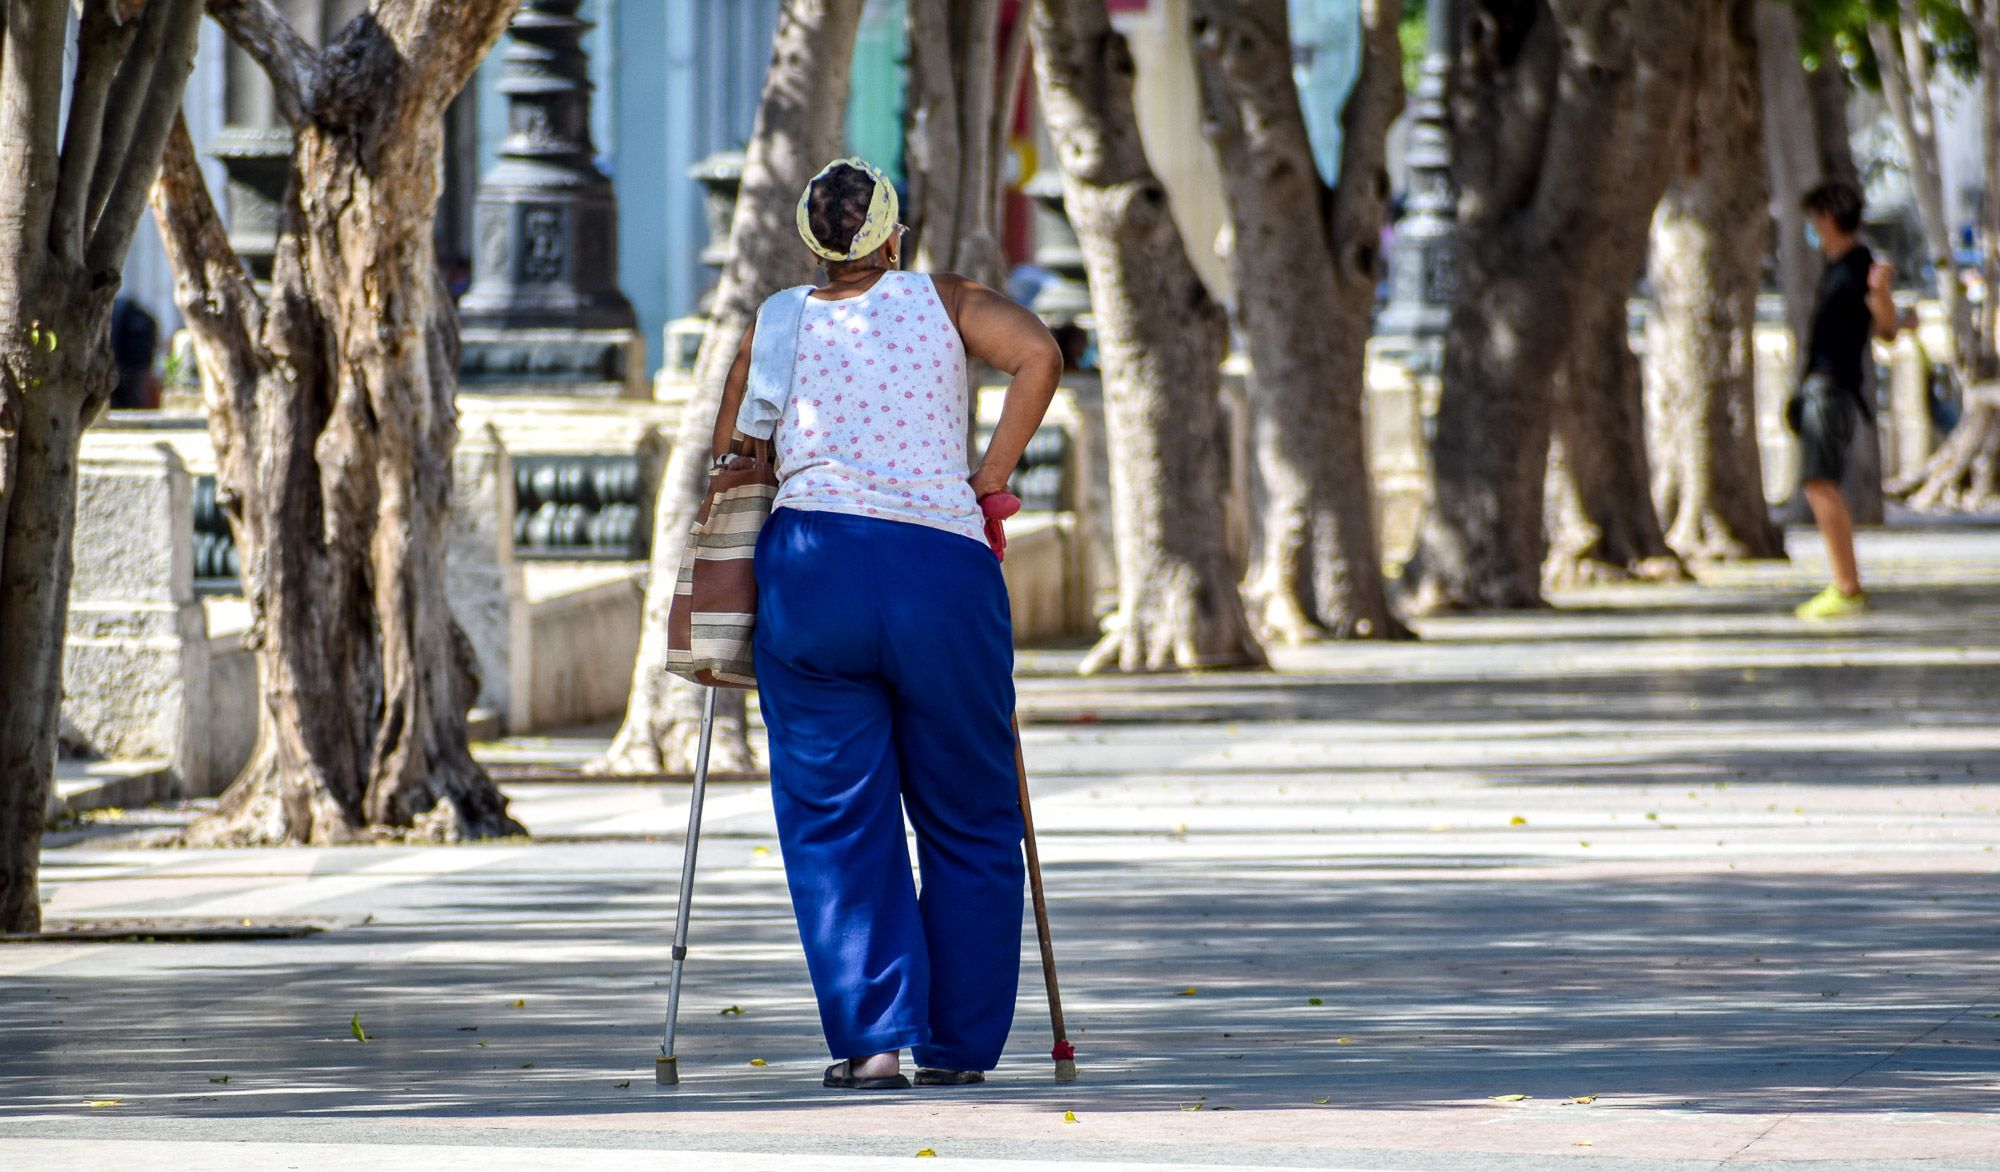 Maltrato a personas mayores en Cuba, otro asunto social pendiente  